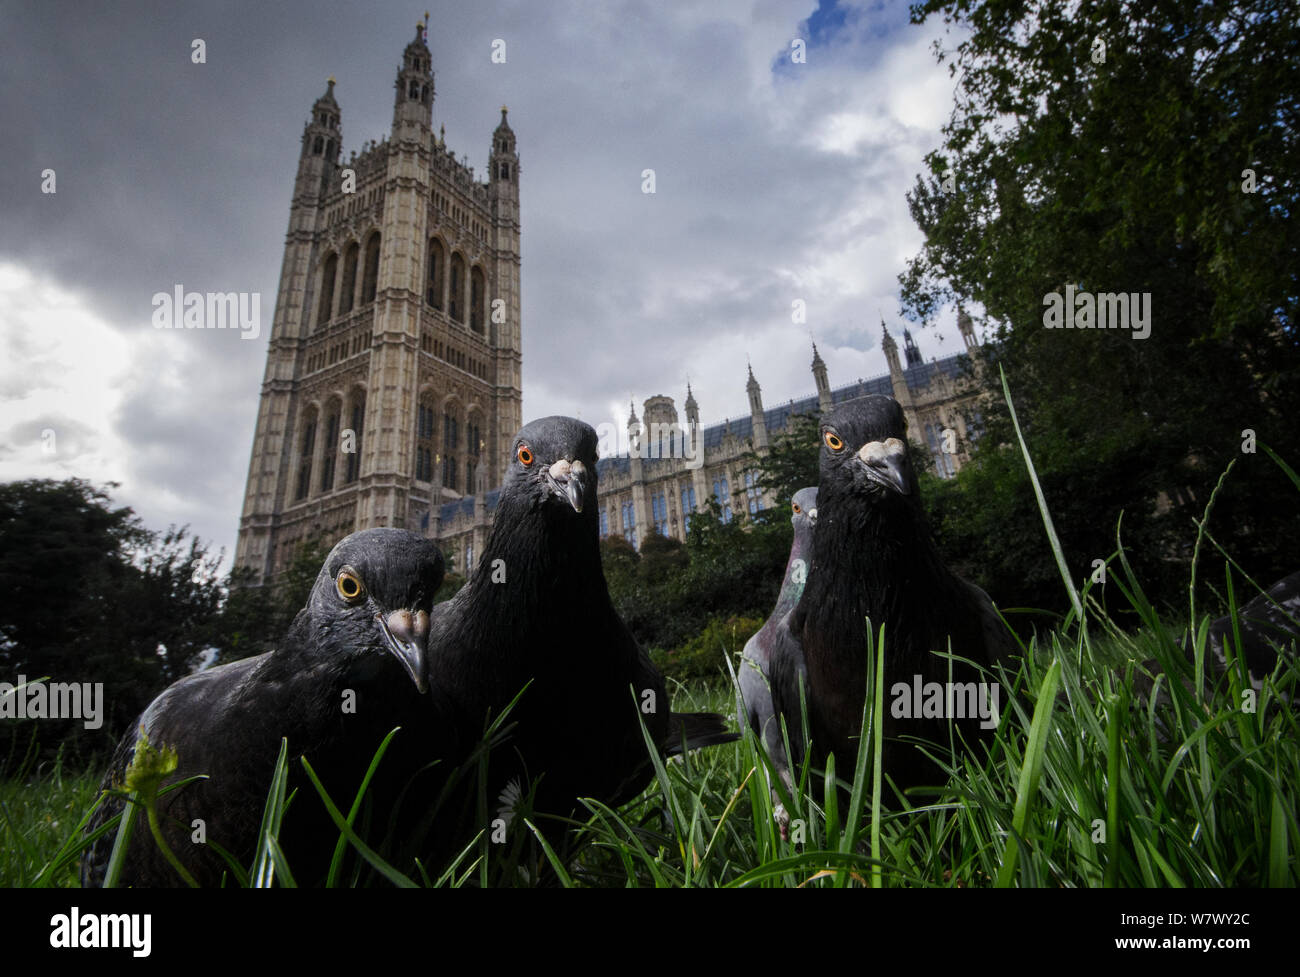 Pigeons sauvages (Columba livia) devant les Maisons du Parlement à Westminster. Londres, Royaume-Uni. Juillet. Finaliste en 2013 Terre Sauvage Nature&# 39;s Images awards, catégorie urbaine. Banque D'Images